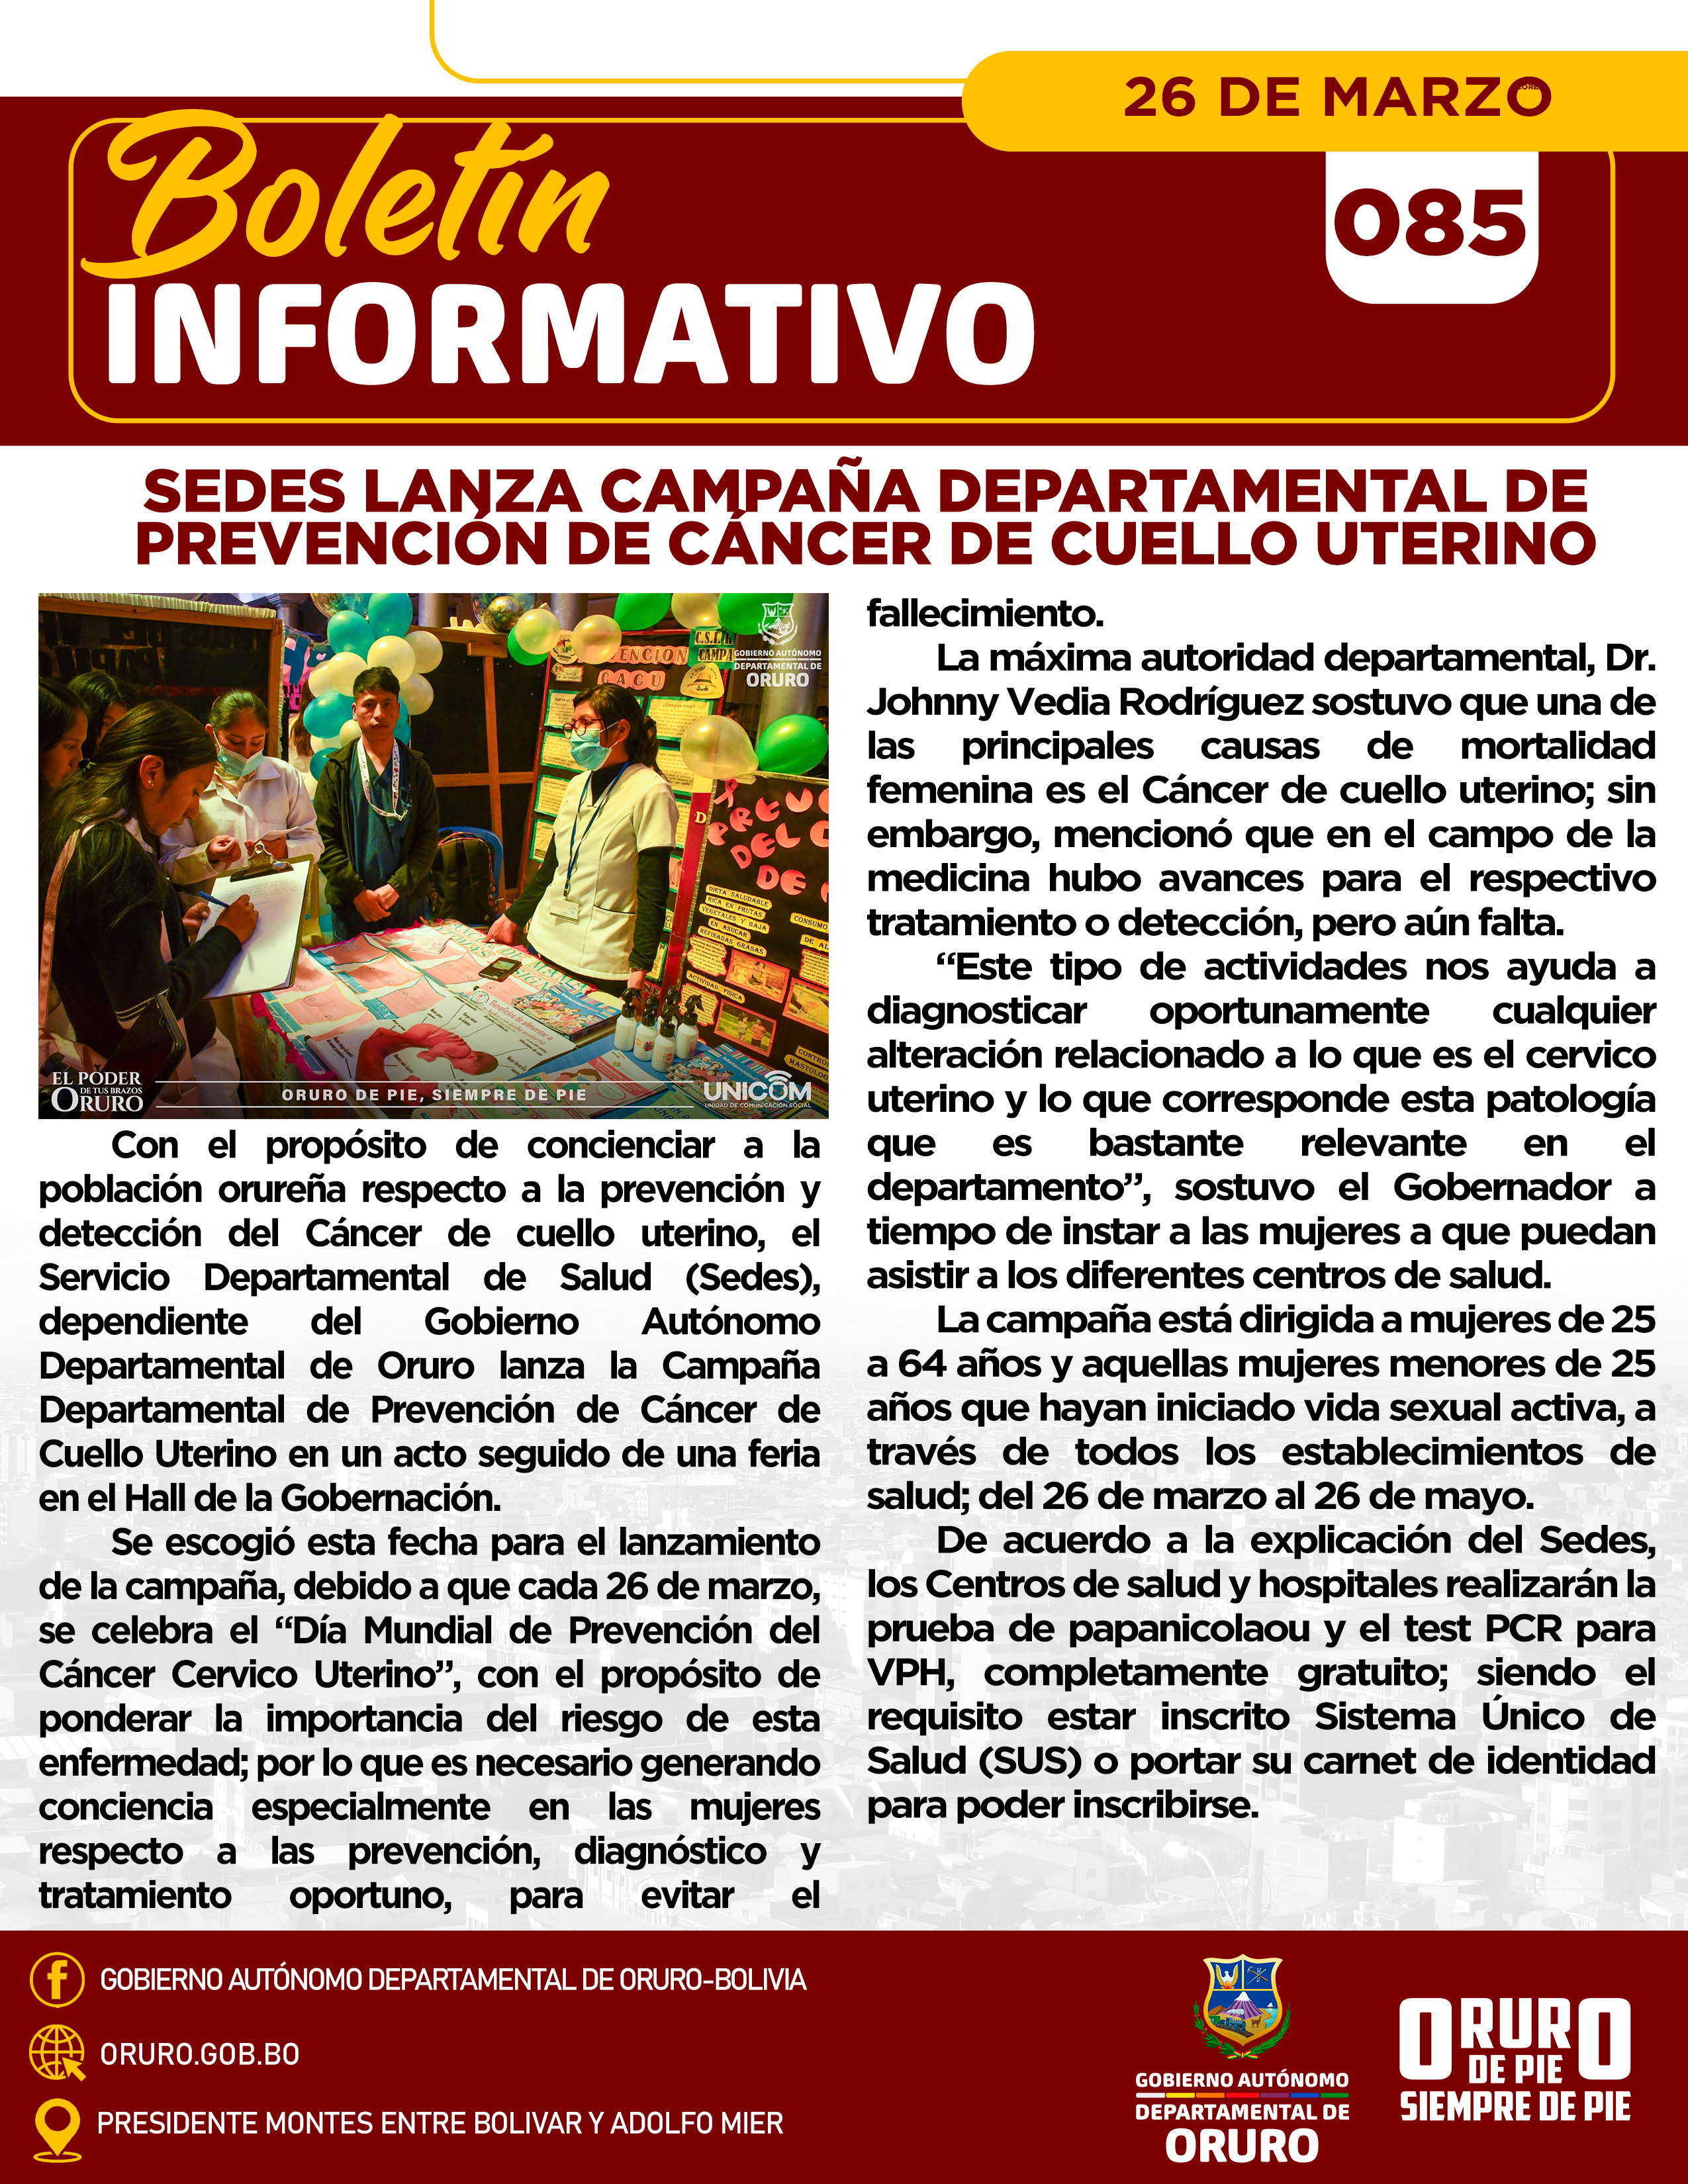 Sedes lanza Campaña Departamental de Prevención de Cáncer de cuello uterino